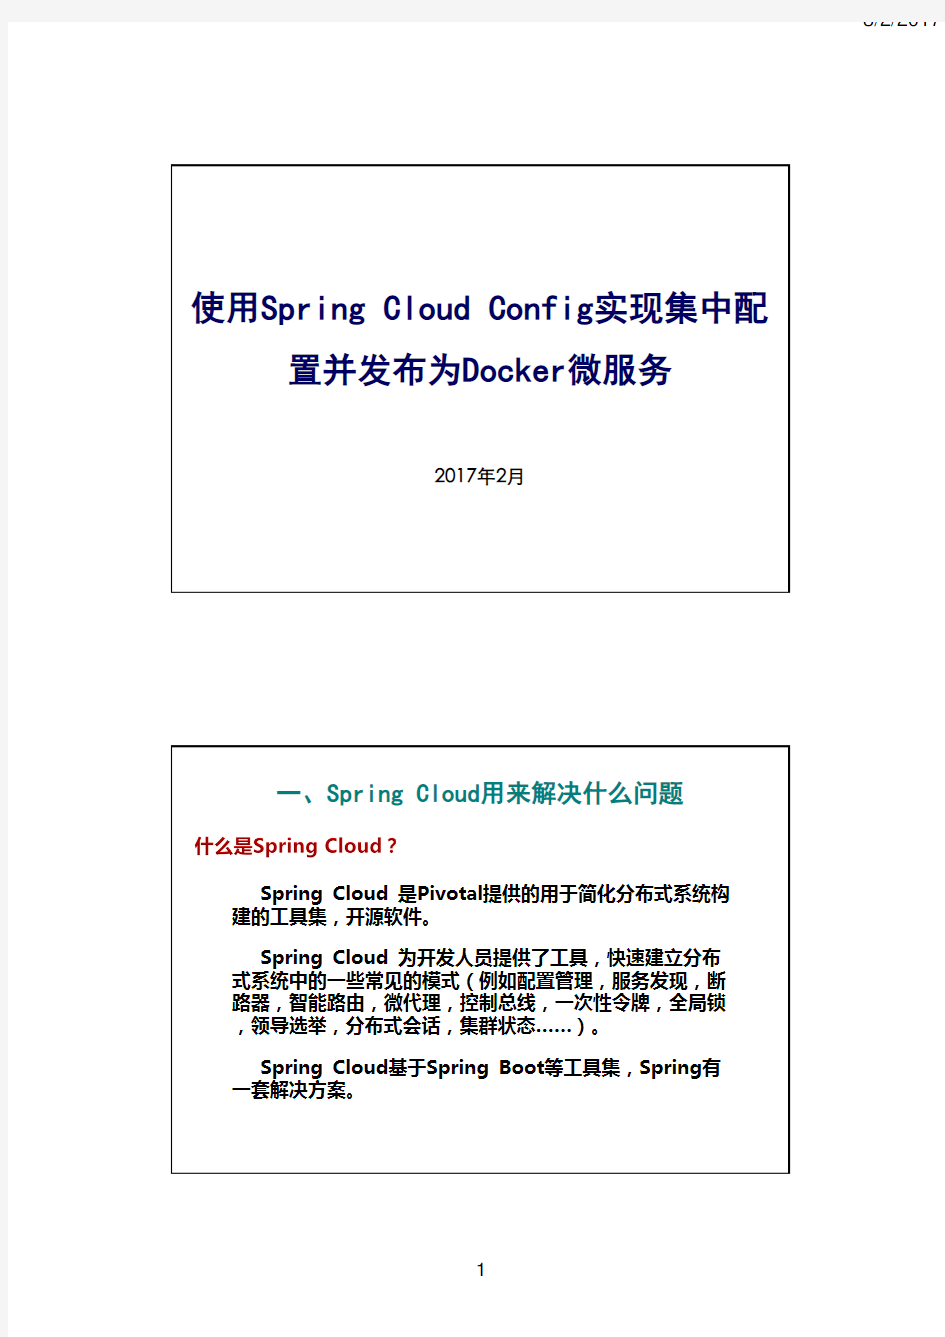 使用Spring Cloud Config实现集中配置并发布为Docker微服务